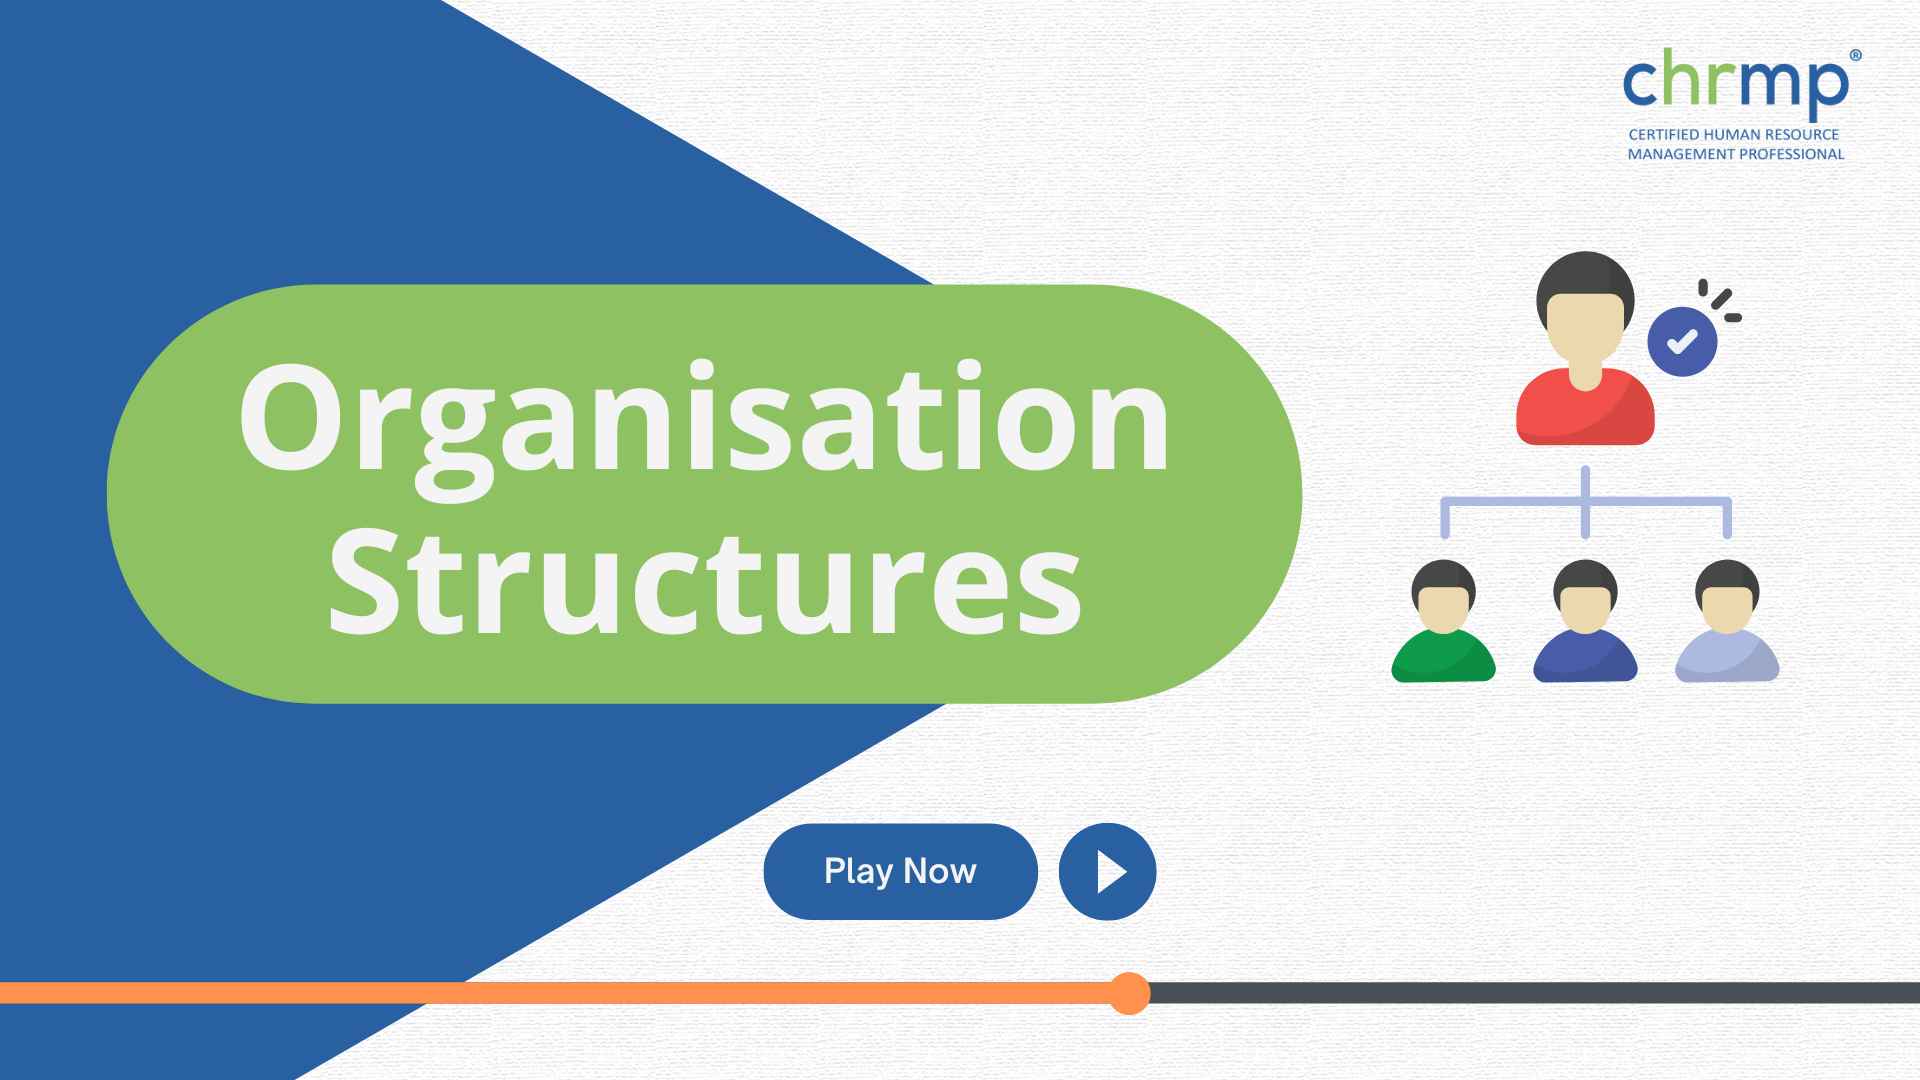 Organisation structures